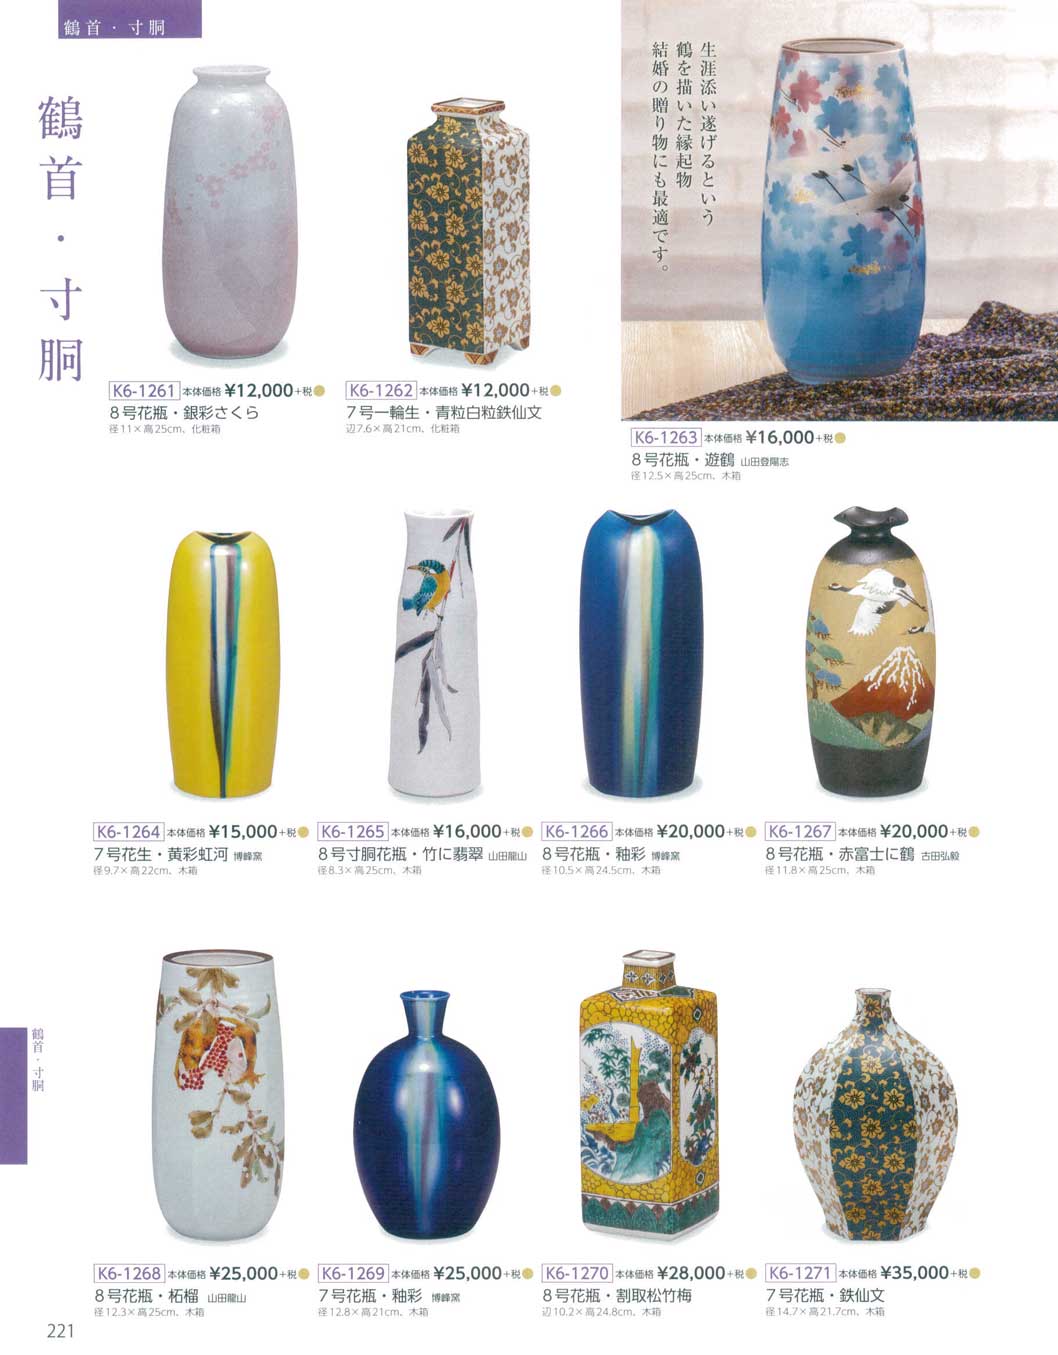 食器 鶴首・寸胴Kutani-ware, Flower vase 九谷焼総合カタログＫ６ 